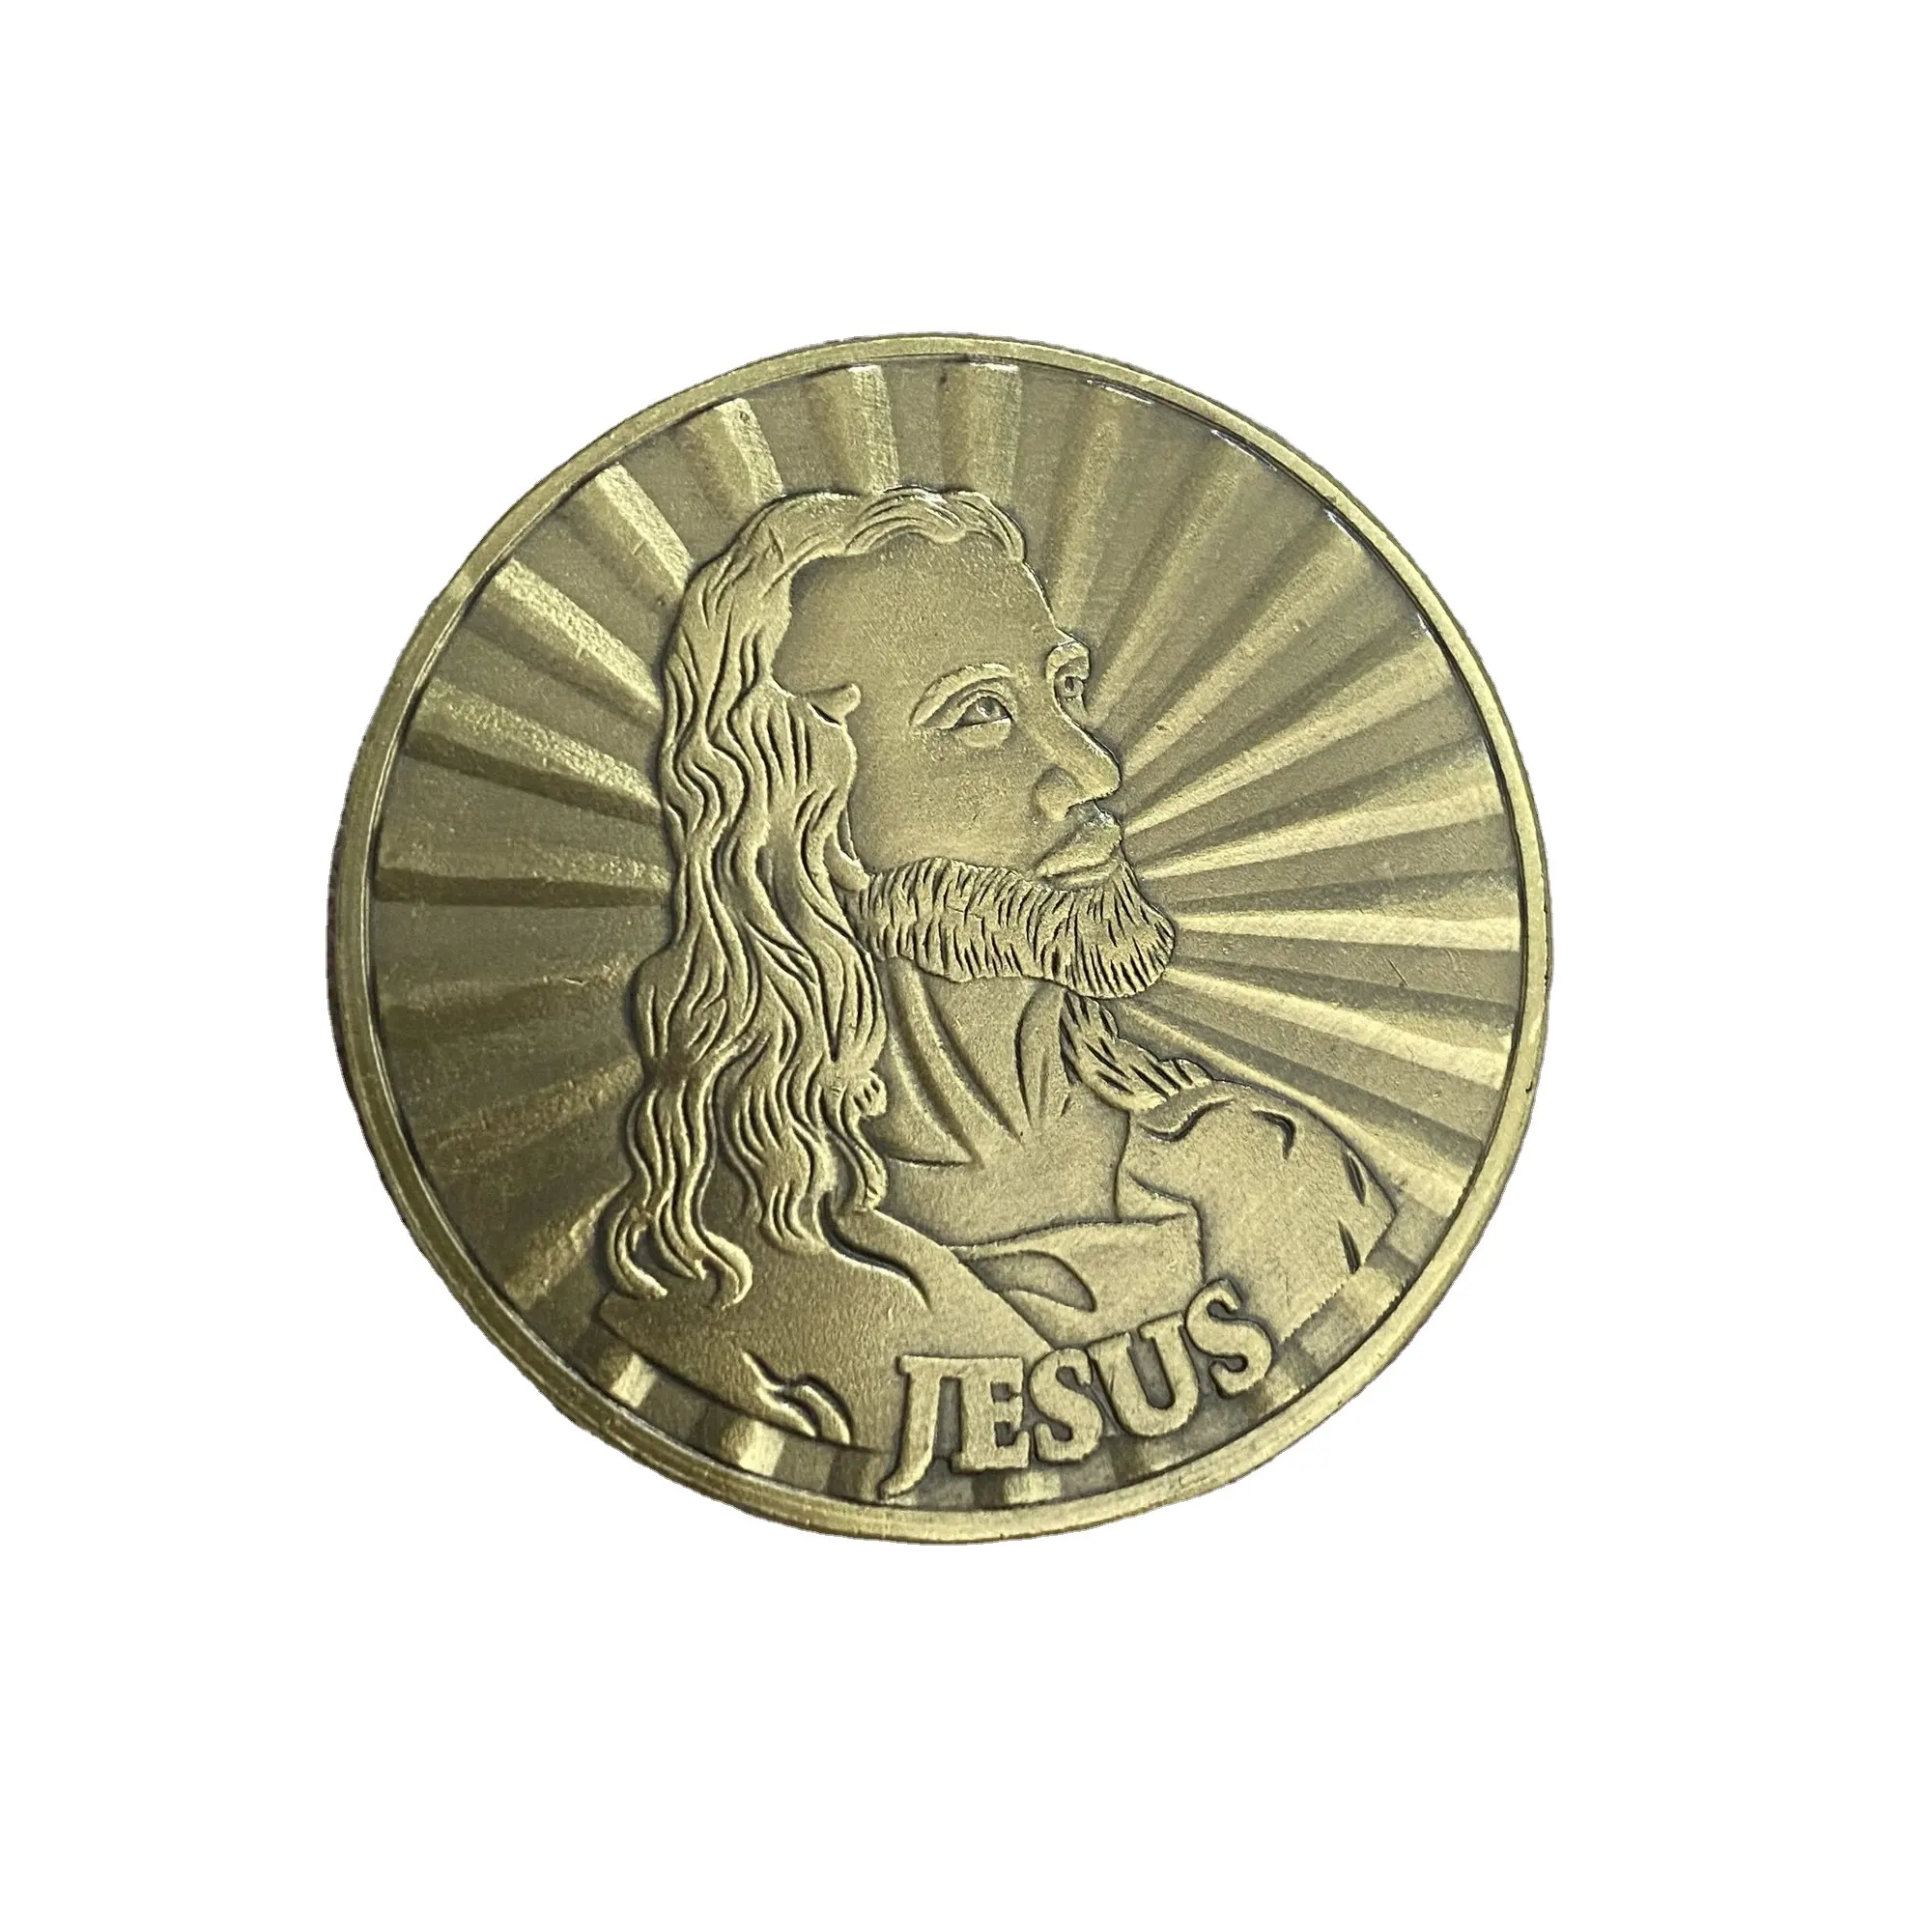 Jesus Coin Cabeça de Cristo por Warner Sallman Desafio Moeda KJV Bíblia Verso Oração Token Católico e Cristão Religioso COIN